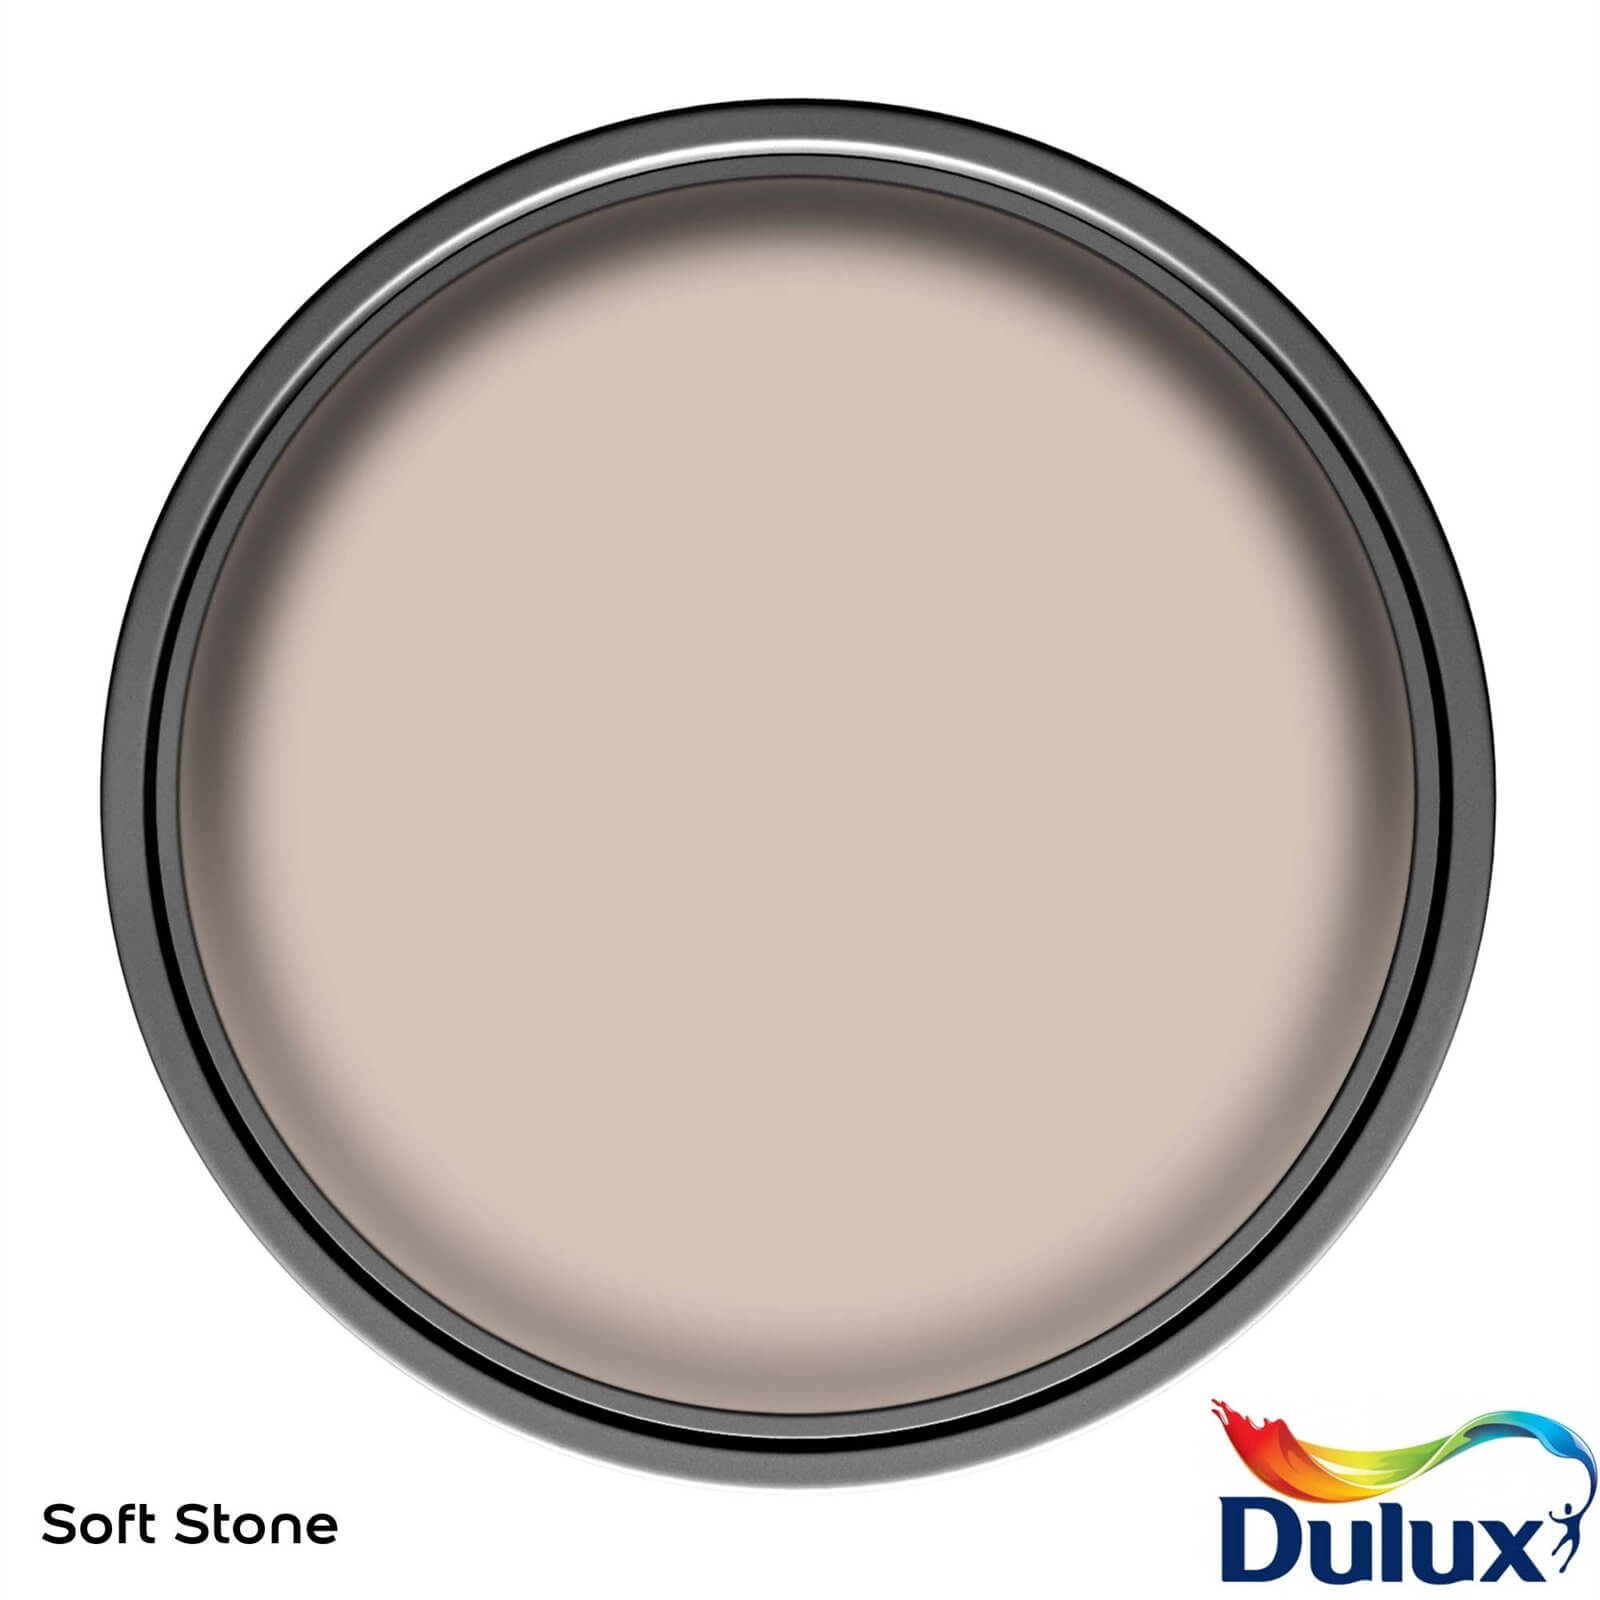 Dulux Easycare Washable & Tough Matt Paint Soft Stone - 2.5L